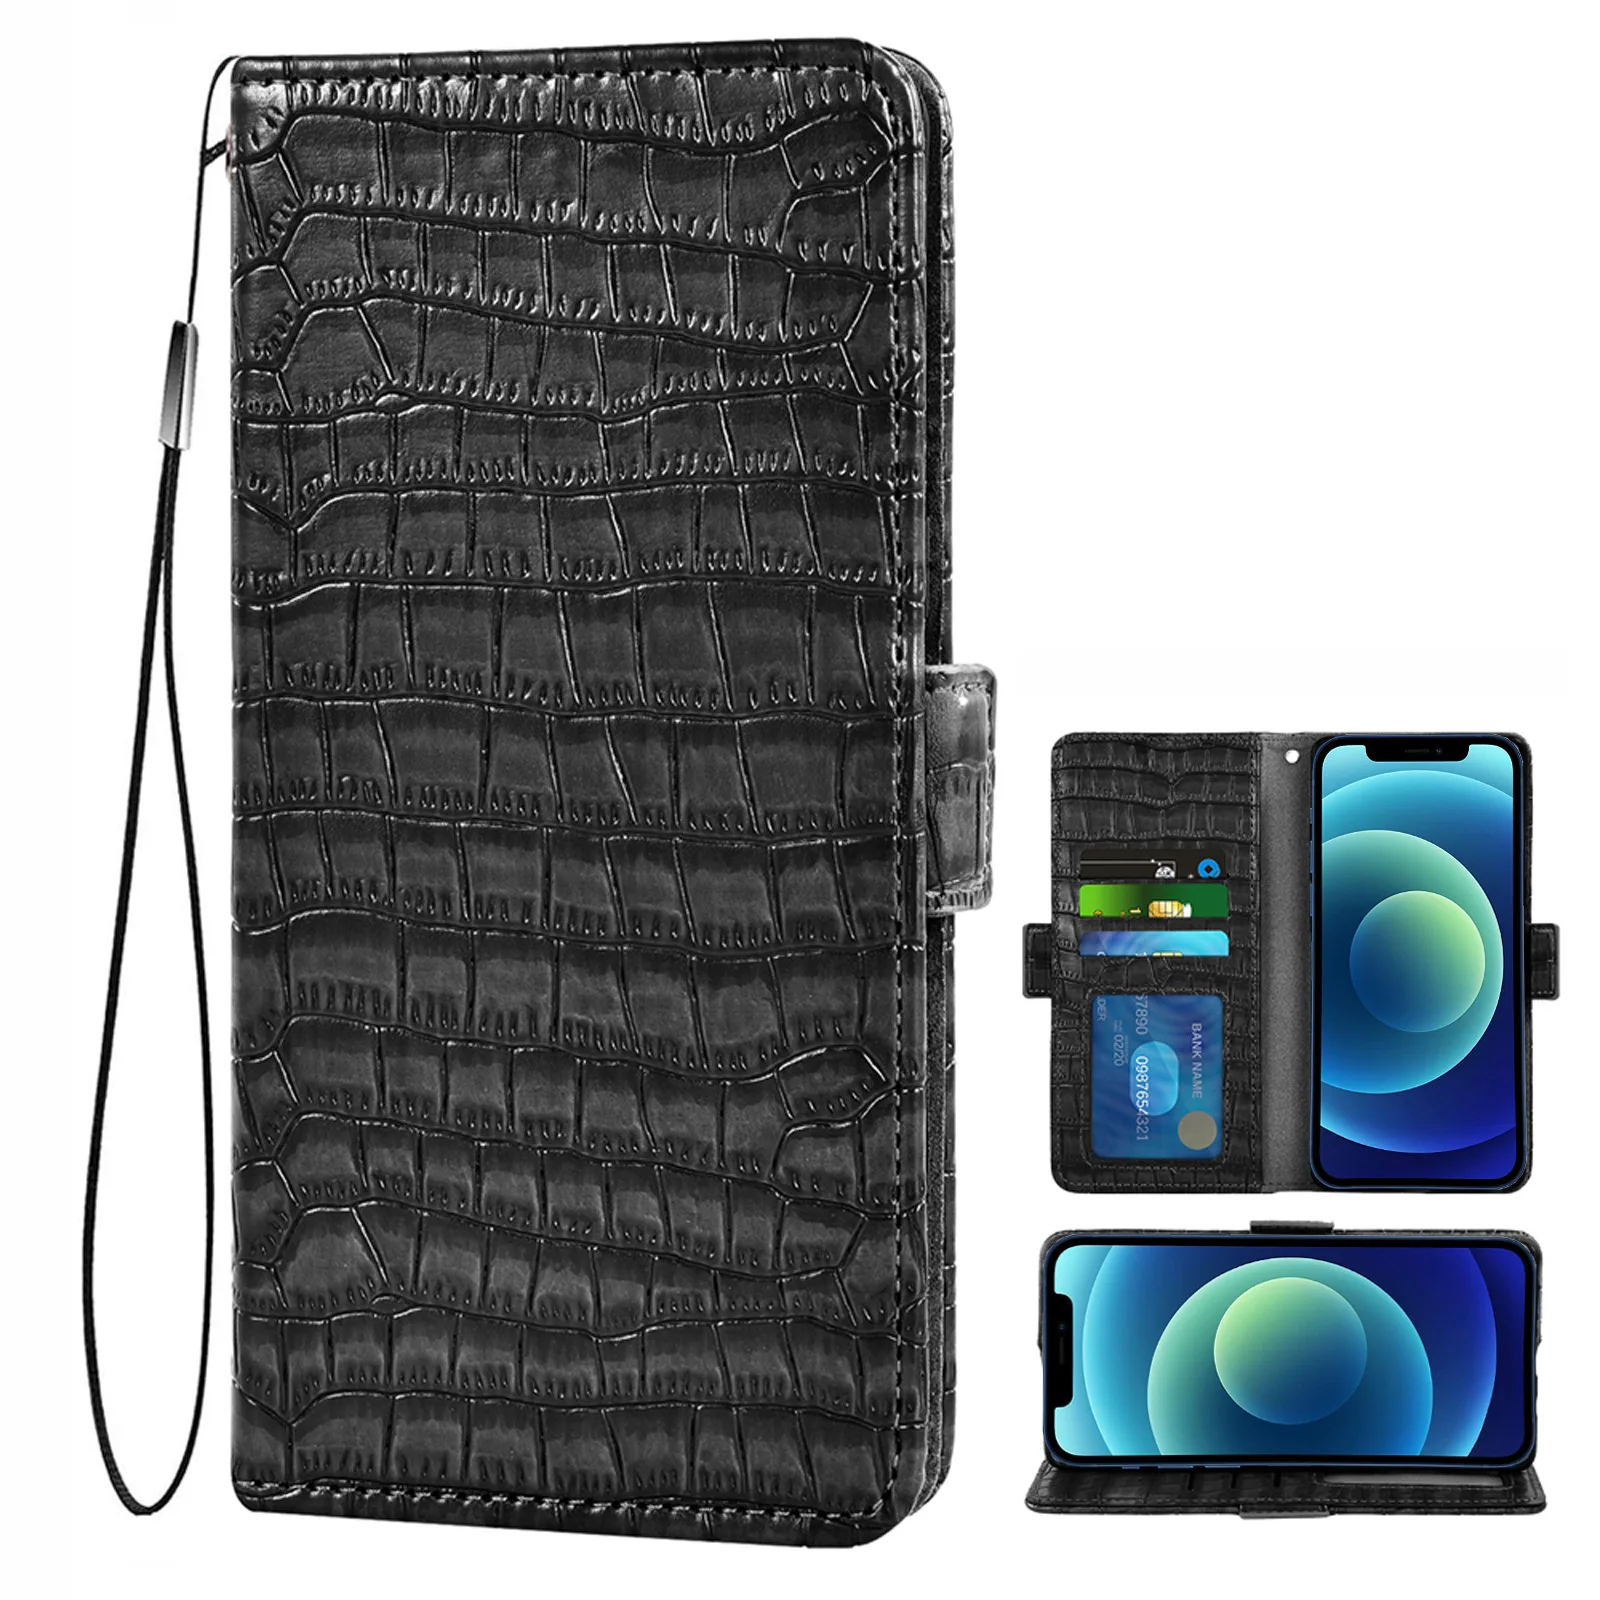 Кожаный флип-чехол для телефона чехол-бумажник Samsung Galaxy J8 J6 J4 Plus J2 Pro J7 2017 J5 2015 J3 J1 2016